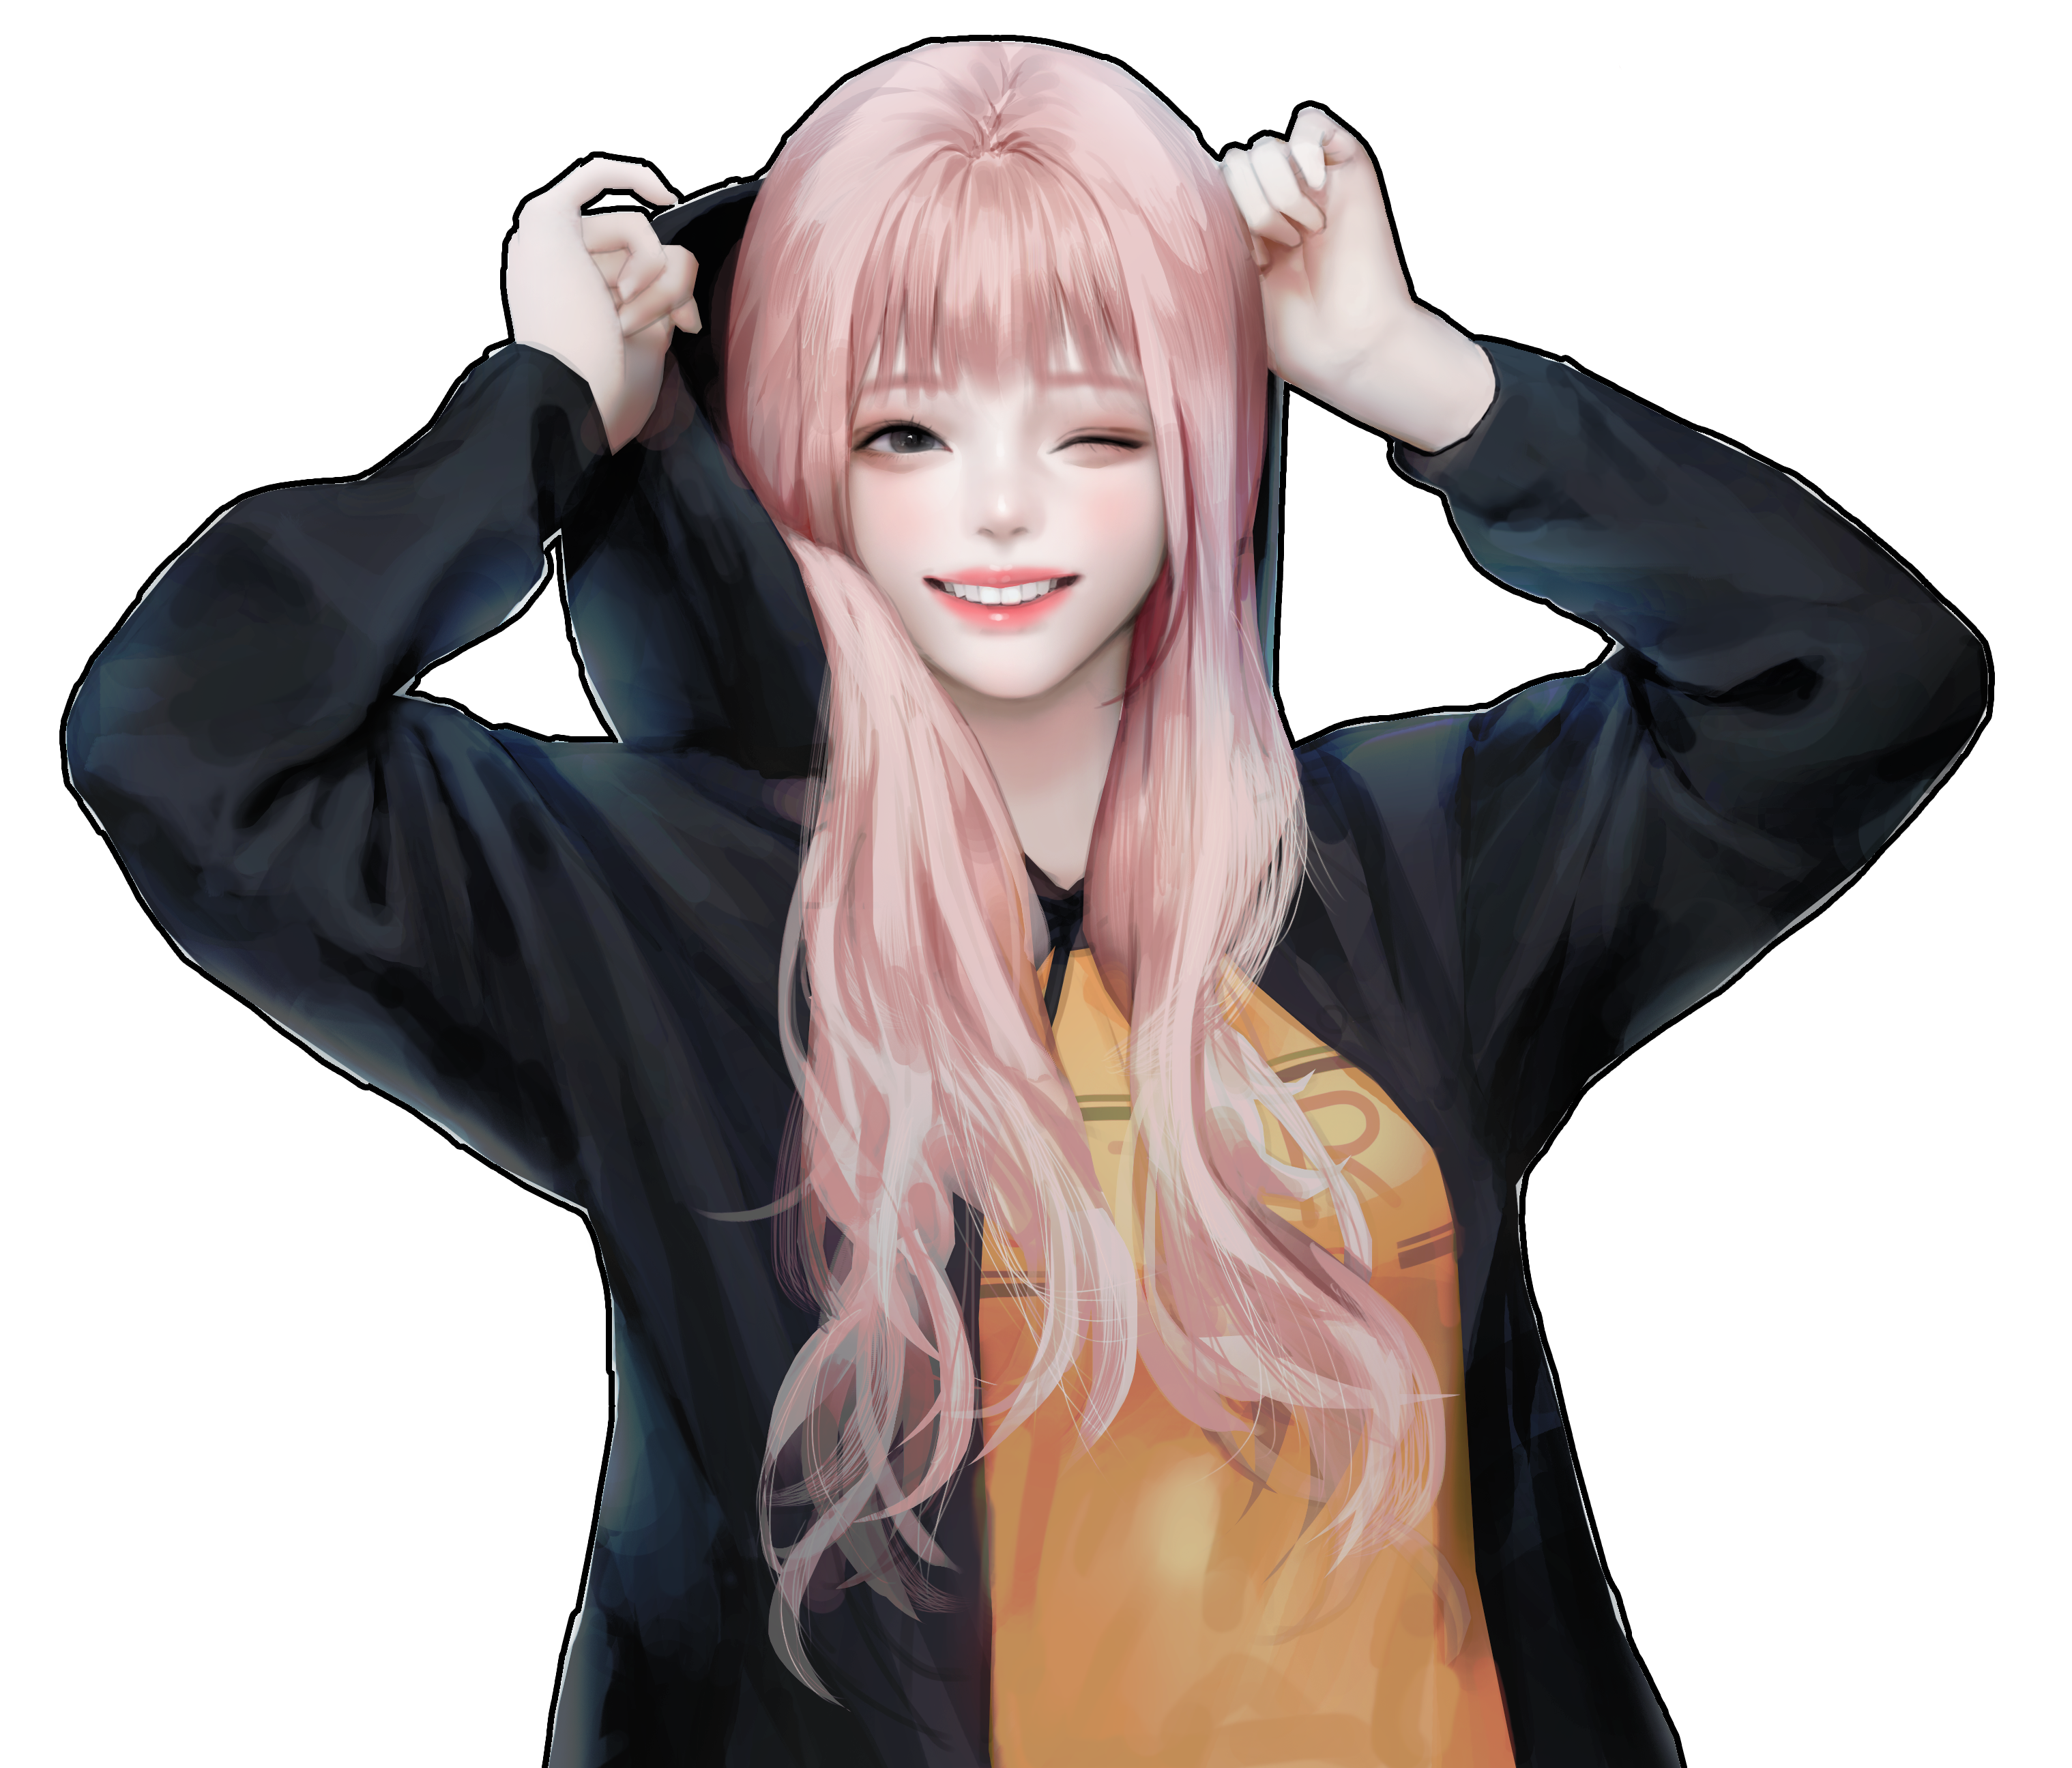 General 3037x2591 fantasy girl painting Yong Jun Park pink hair jacket